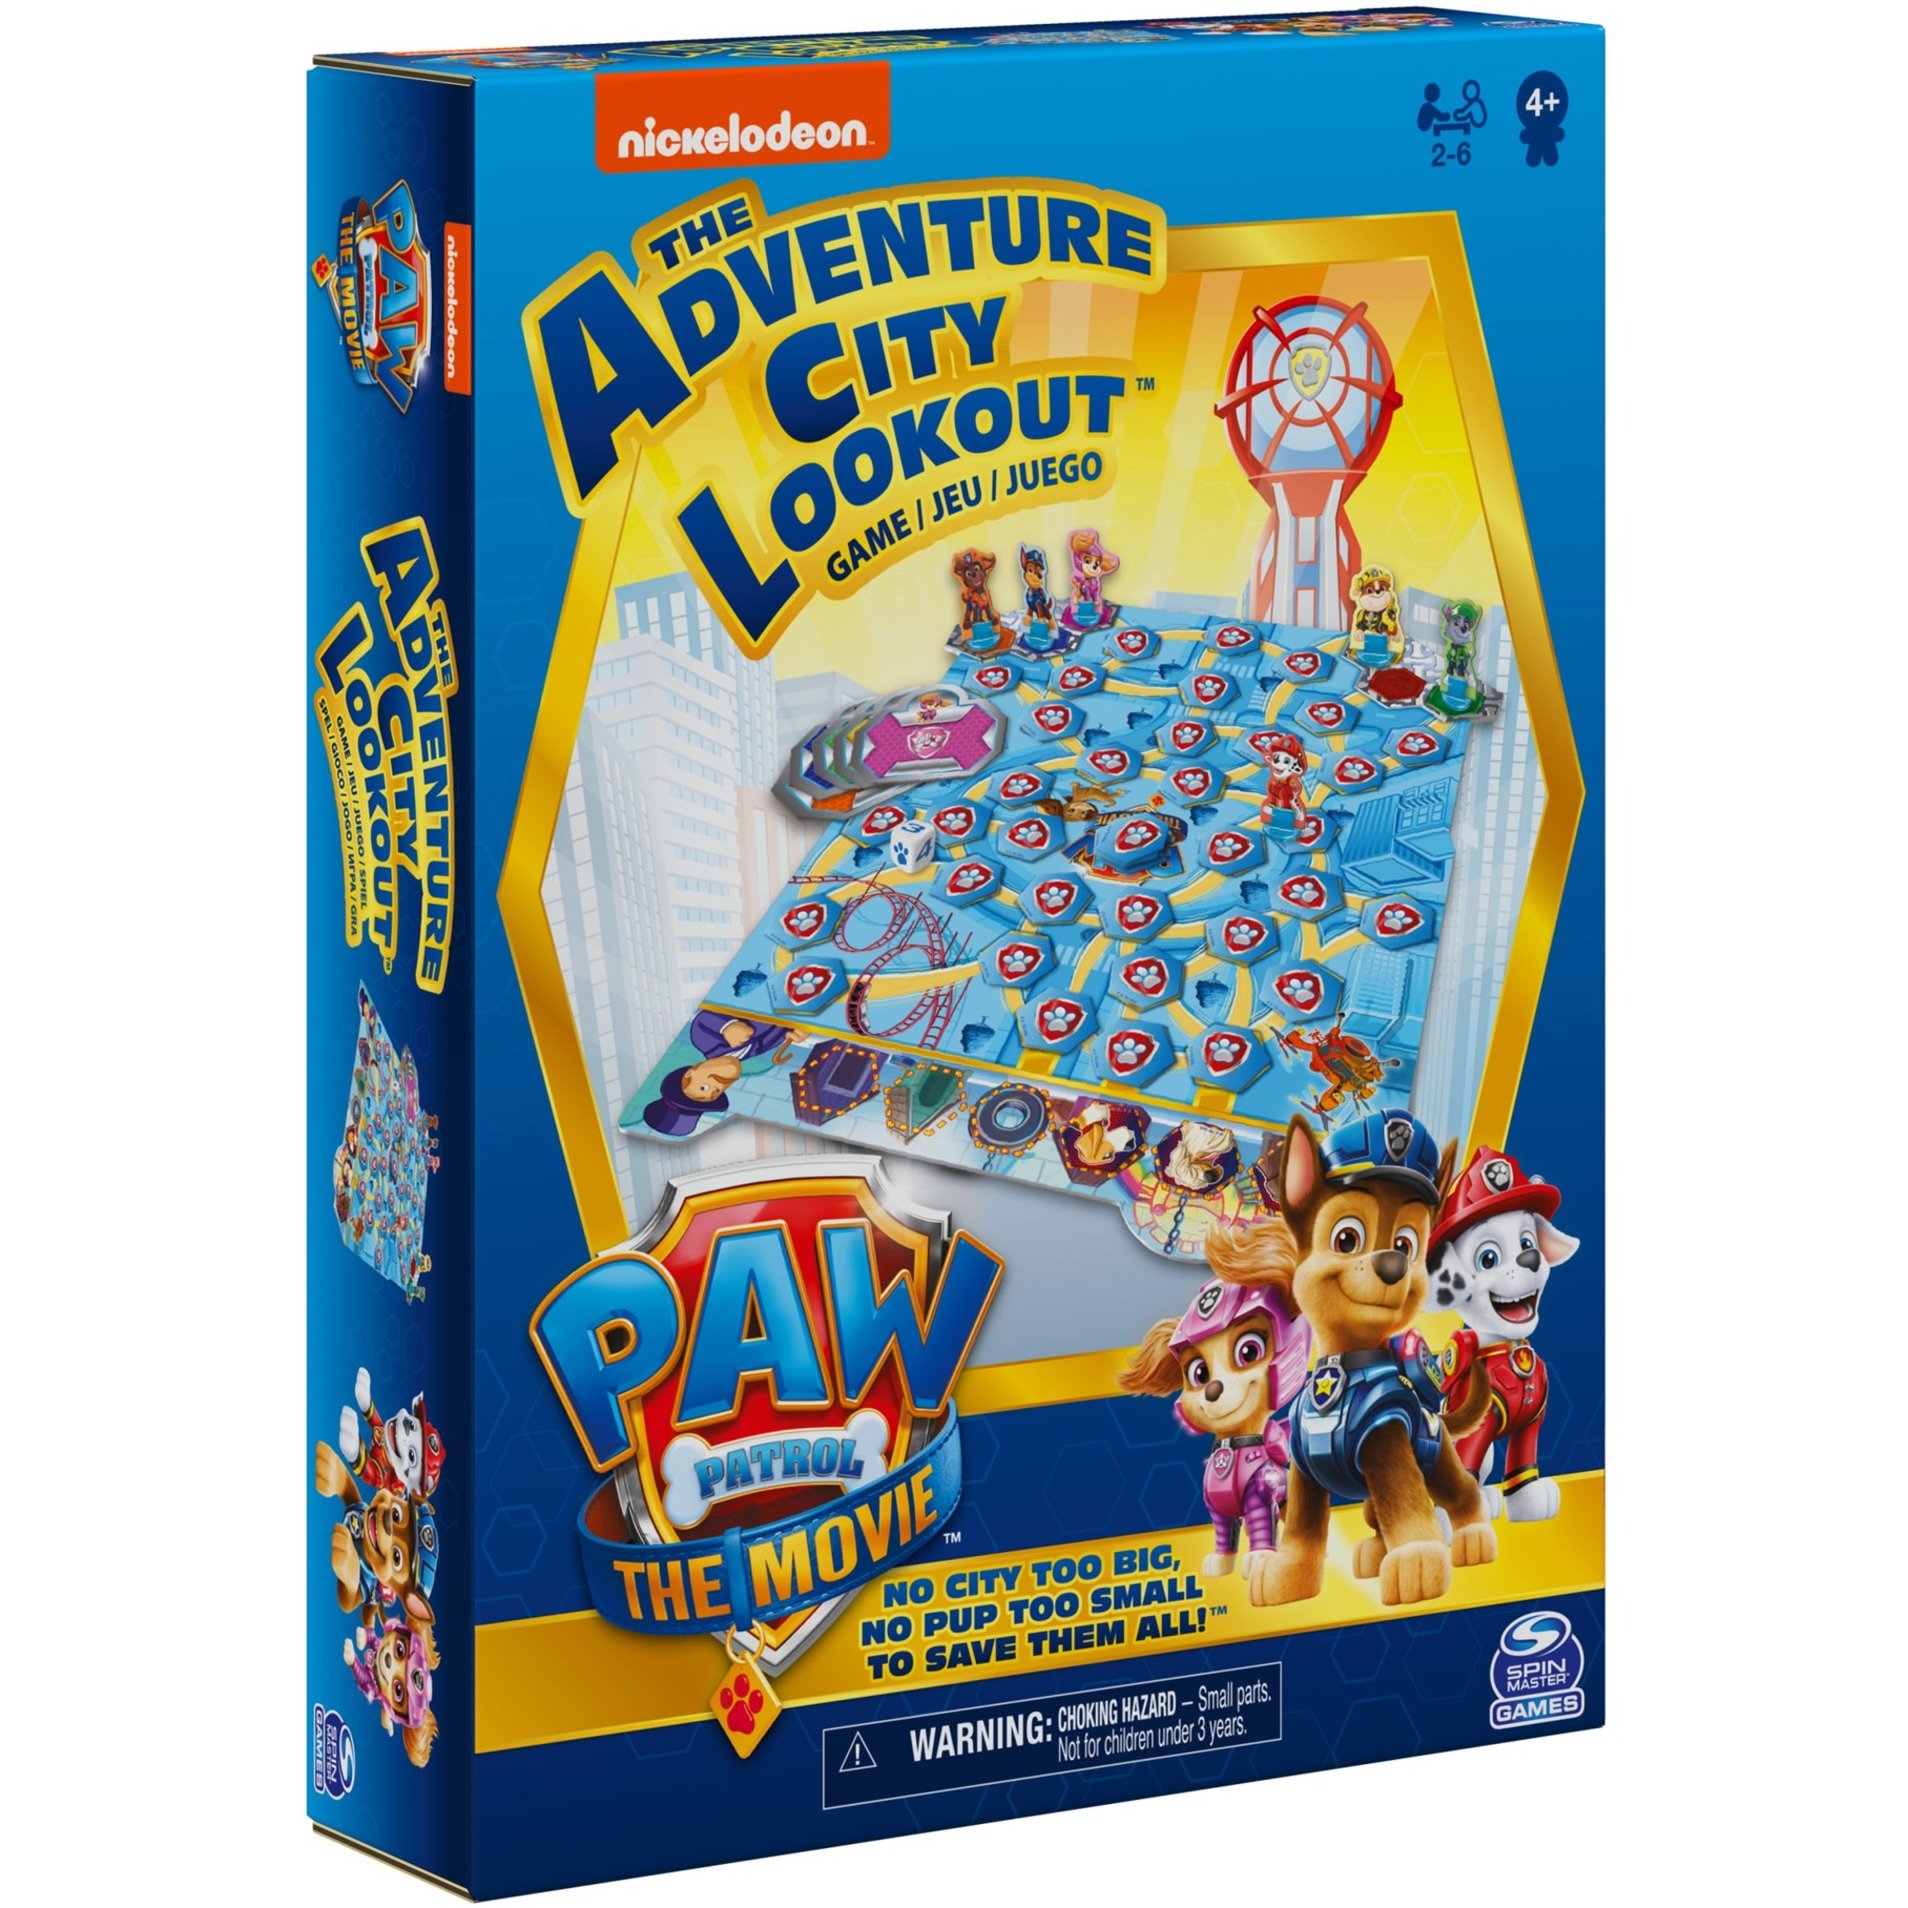 Image of Alternate - Das Adventure City Lookout Spiel - Das Kinderspiel zu "PAW Patrol: Der Kinofilm", Brettspiel online einkaufen bei Alternate